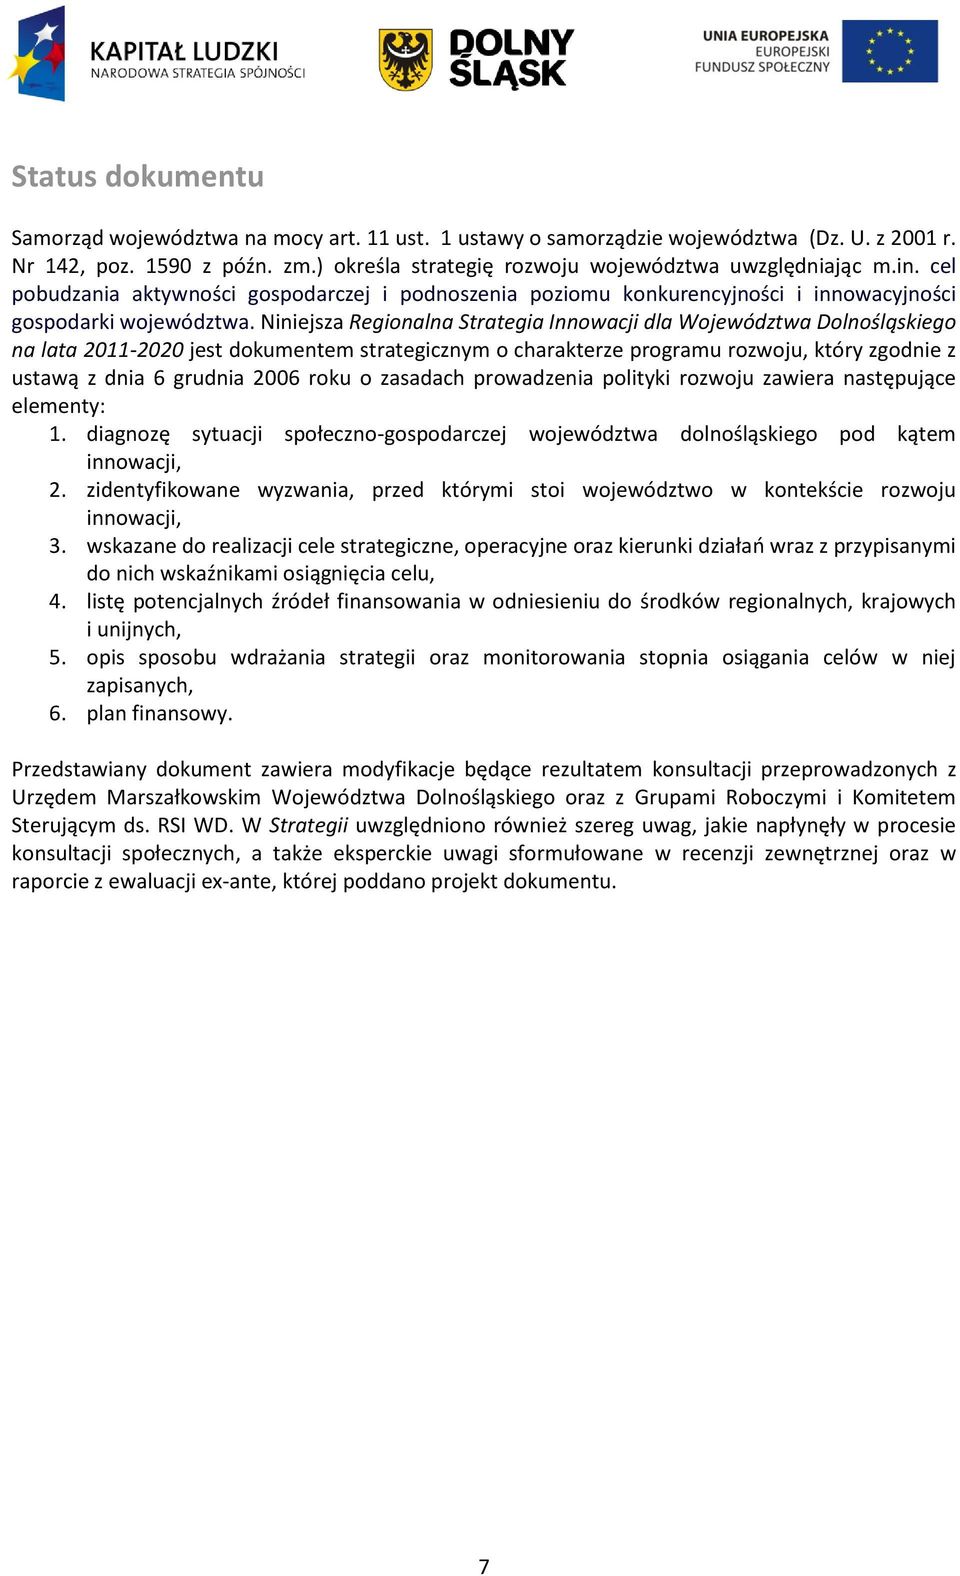 Niniejsza Regionalna Strategia Innowacji dla Województwa Dolnośląskiego na lata 2011-2020 jest dokumentem strategicznym o charakterze programu rozwoju, który zgodnie z ustawą z dnia 6 grudnia 2006